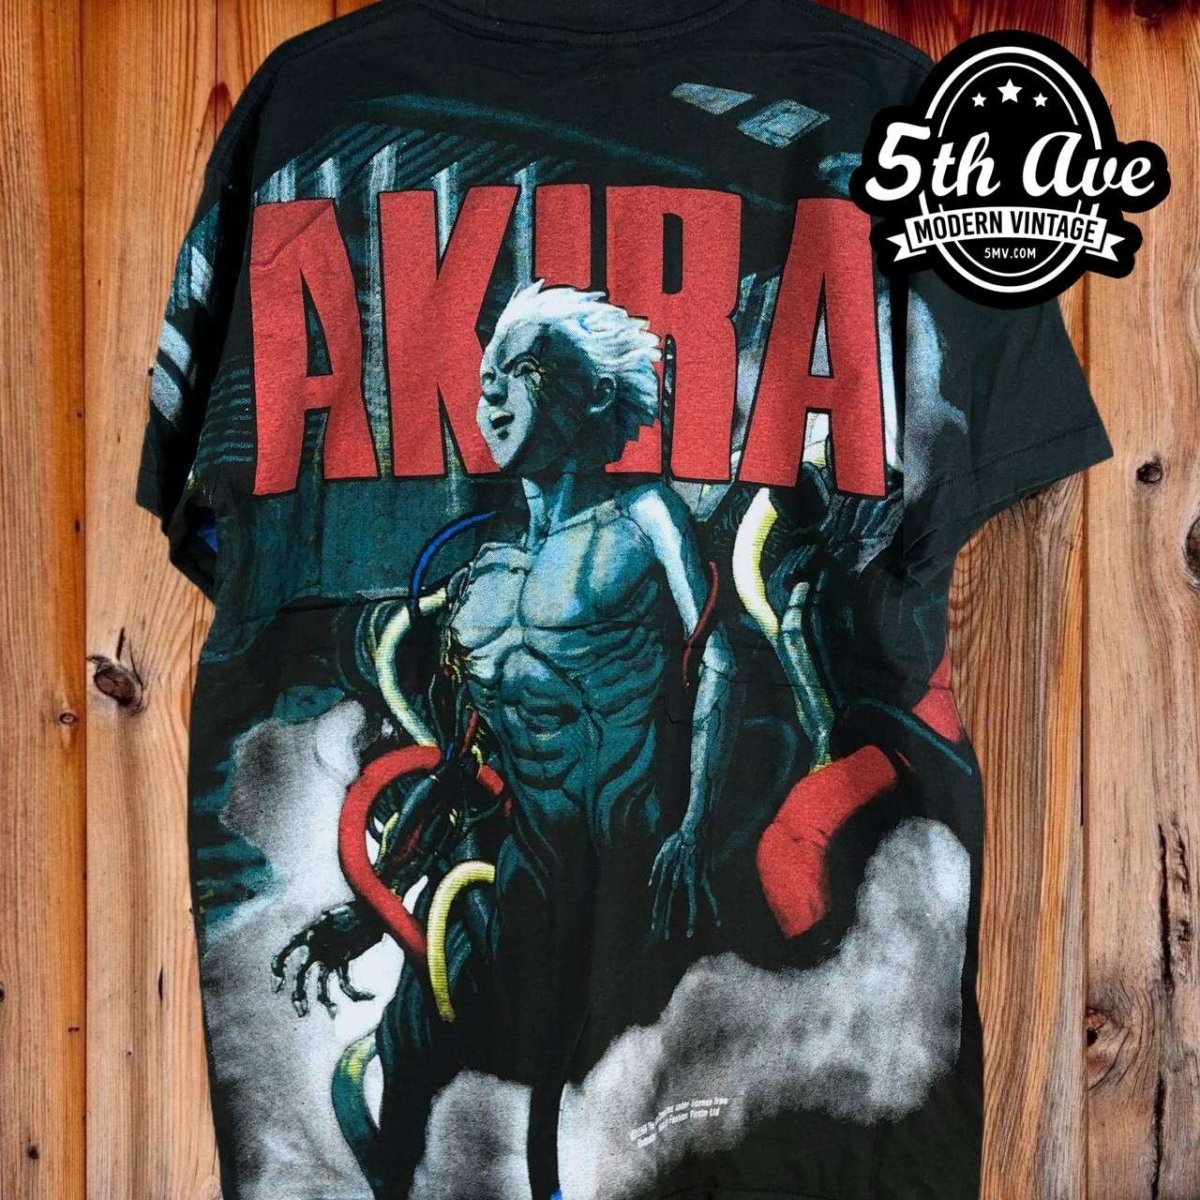 AKIRA Tetsuo Shima: All-Over Print Single Stitch t shirt - Vintage Band Shirts